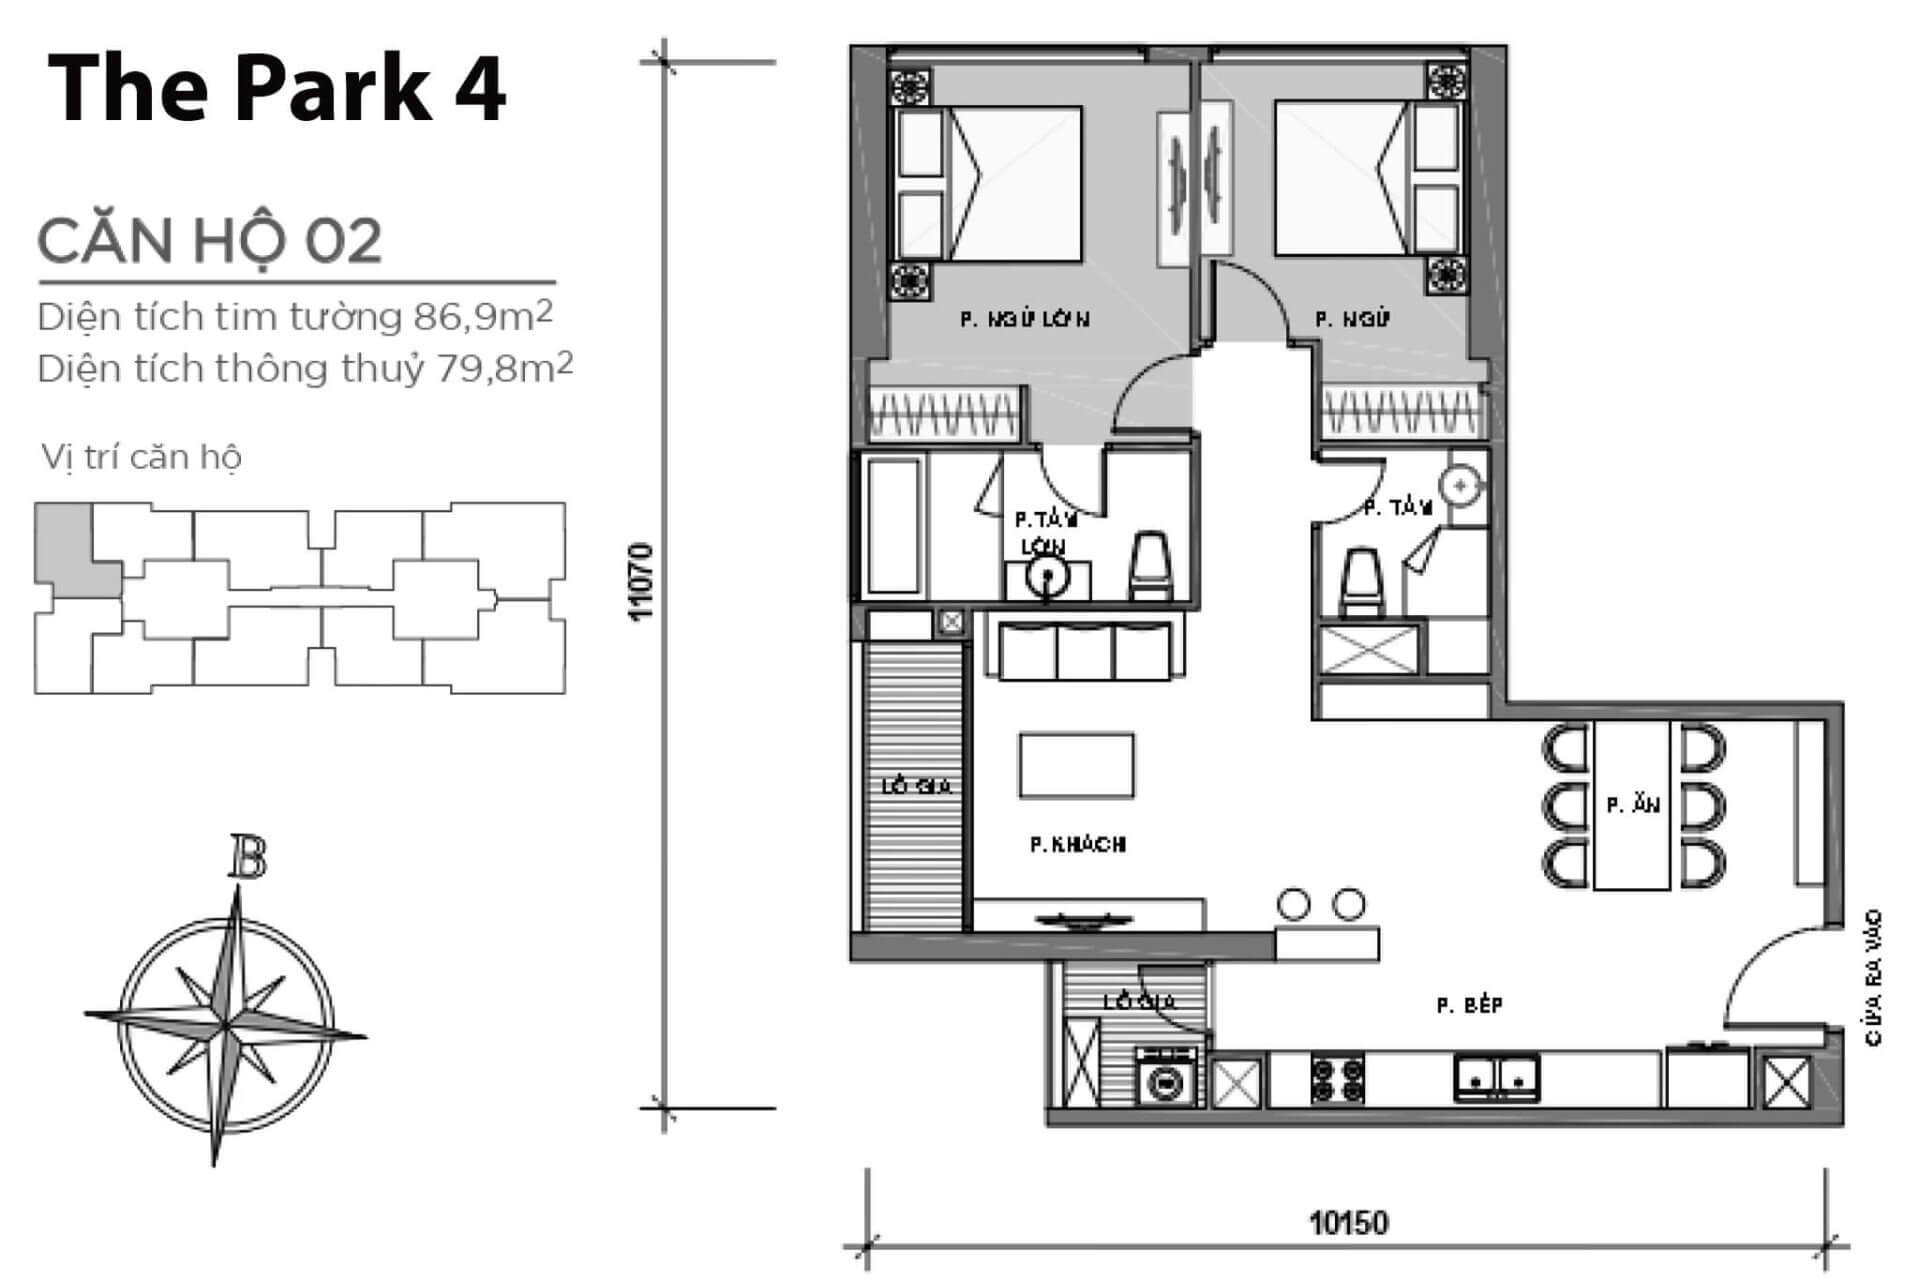 mặt bằng layout căn hộ số 02 Park 4 Vinhomes Central Park